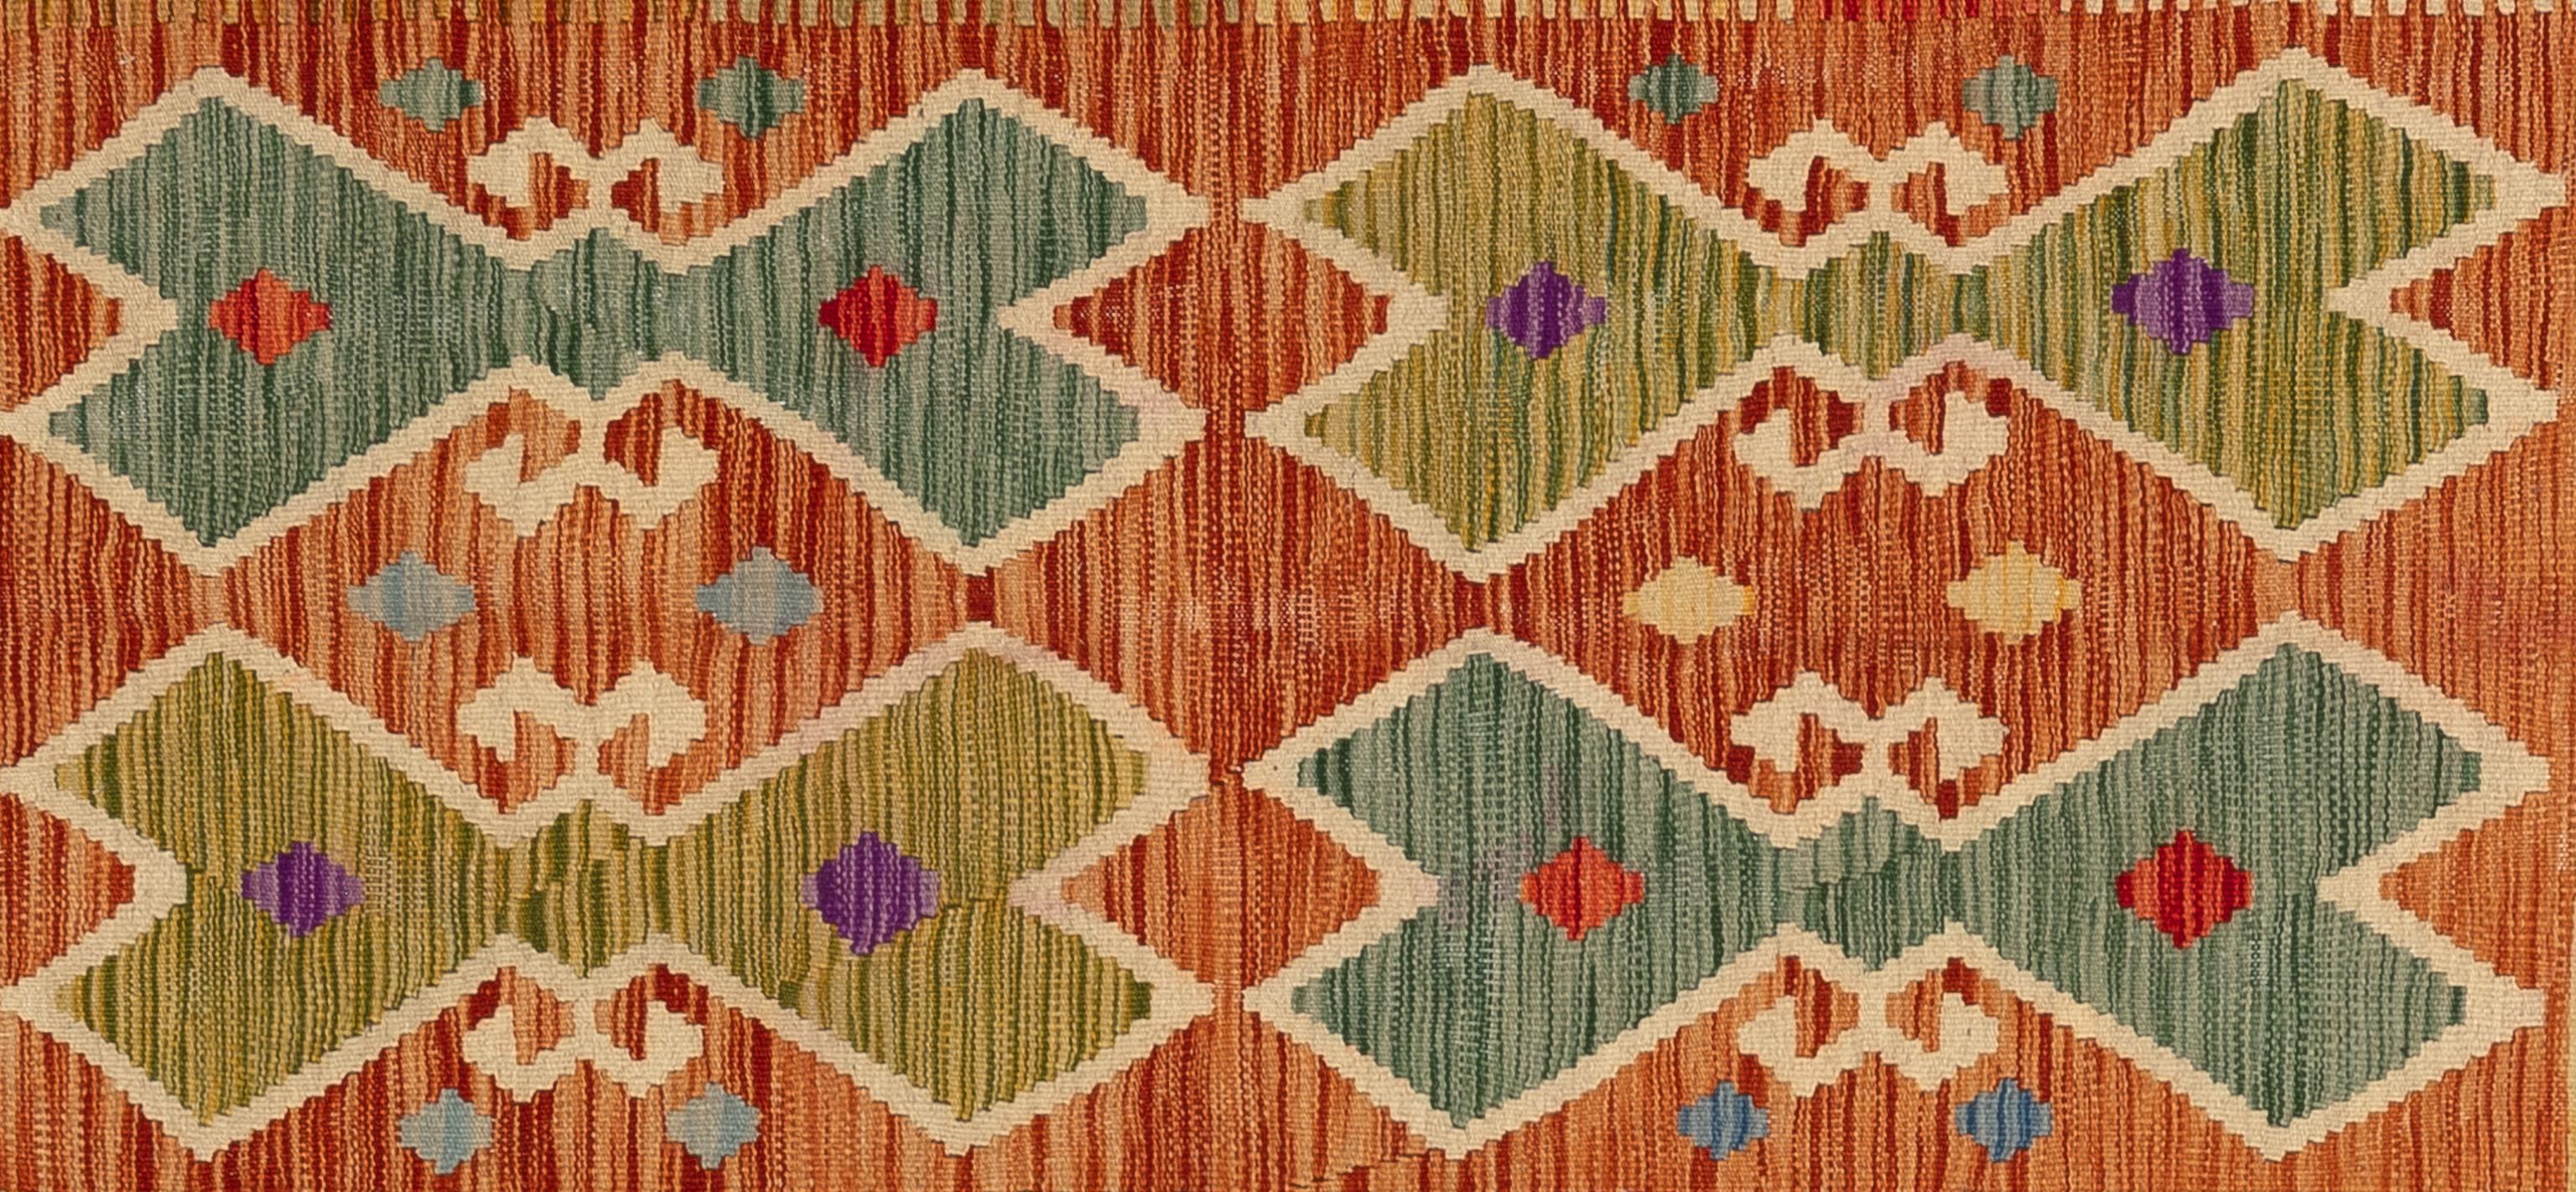 Dieser handgefertigte türkische Teppich im Flachgewebe-Stil besteht aus Wolle auf einer Wollunterlage. Sein variierendes, sich wiederholendes quadratisches Muster zeigt ein einzigartiges, farbenfrohes Design von Rand zu Rand. Dieser unvergleichliche